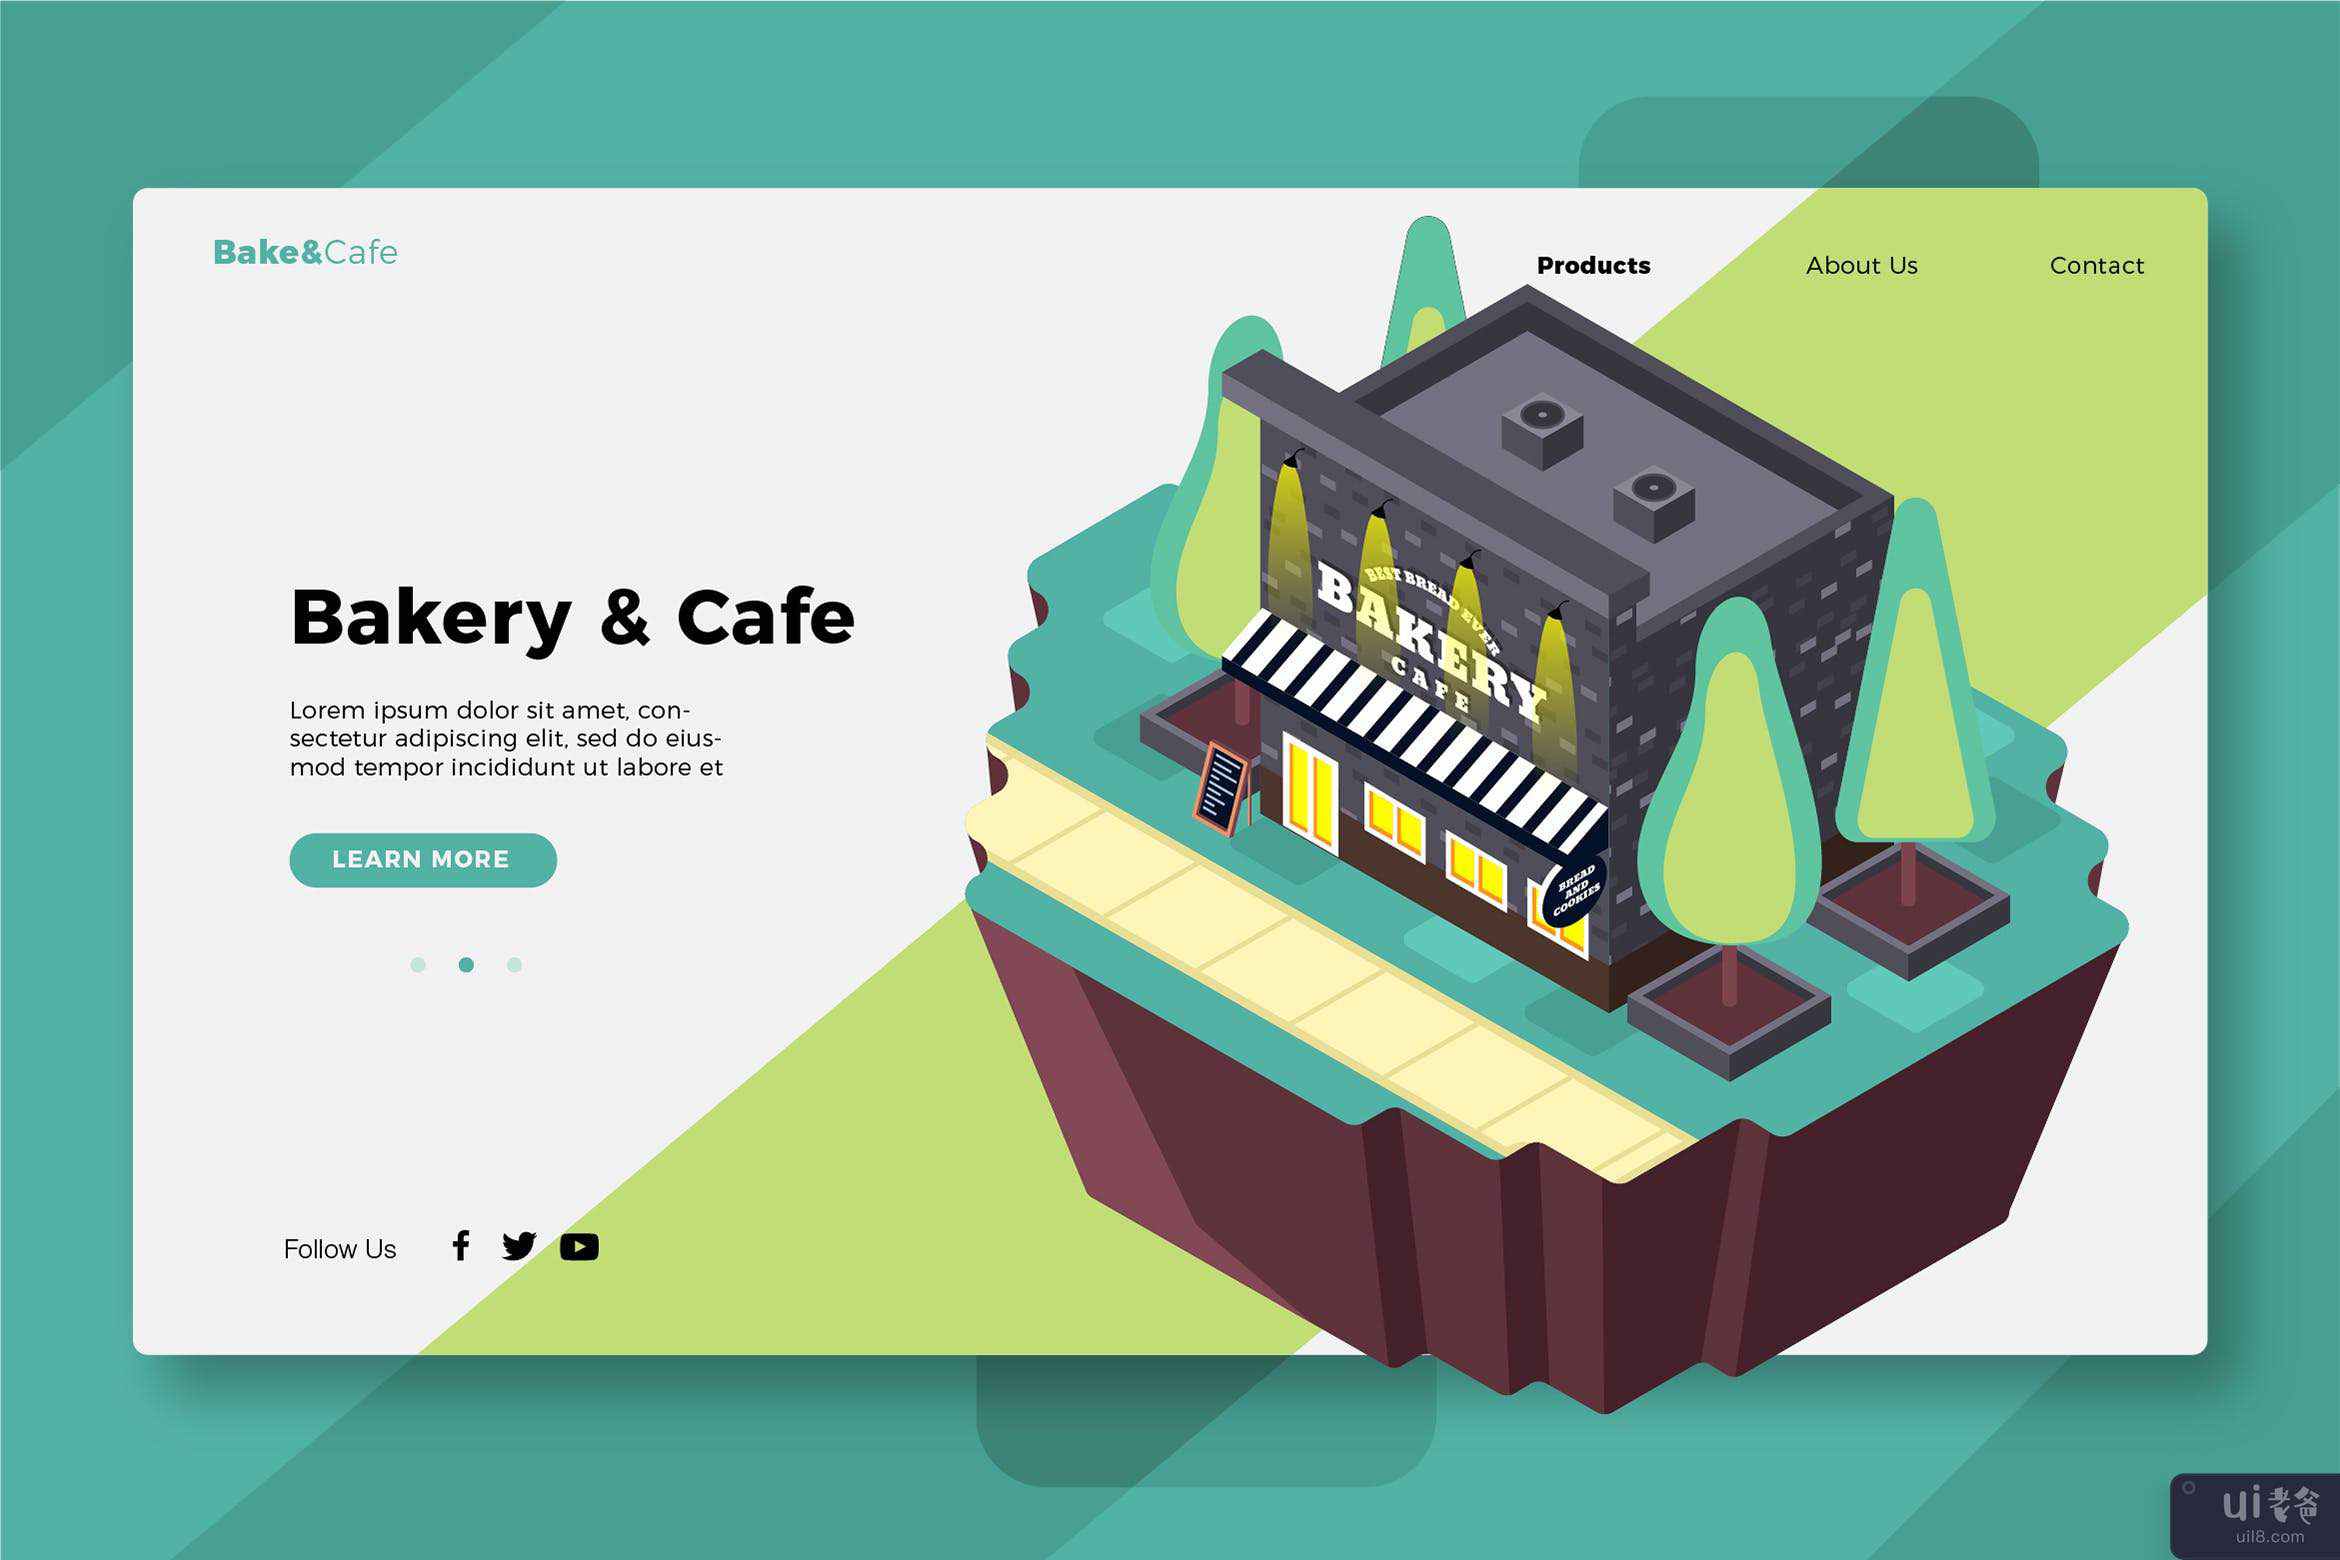 面包店和咖啡馆 - 横幅和登陆页面(Bakery & Cafe - Banner & Landing Page)插图2